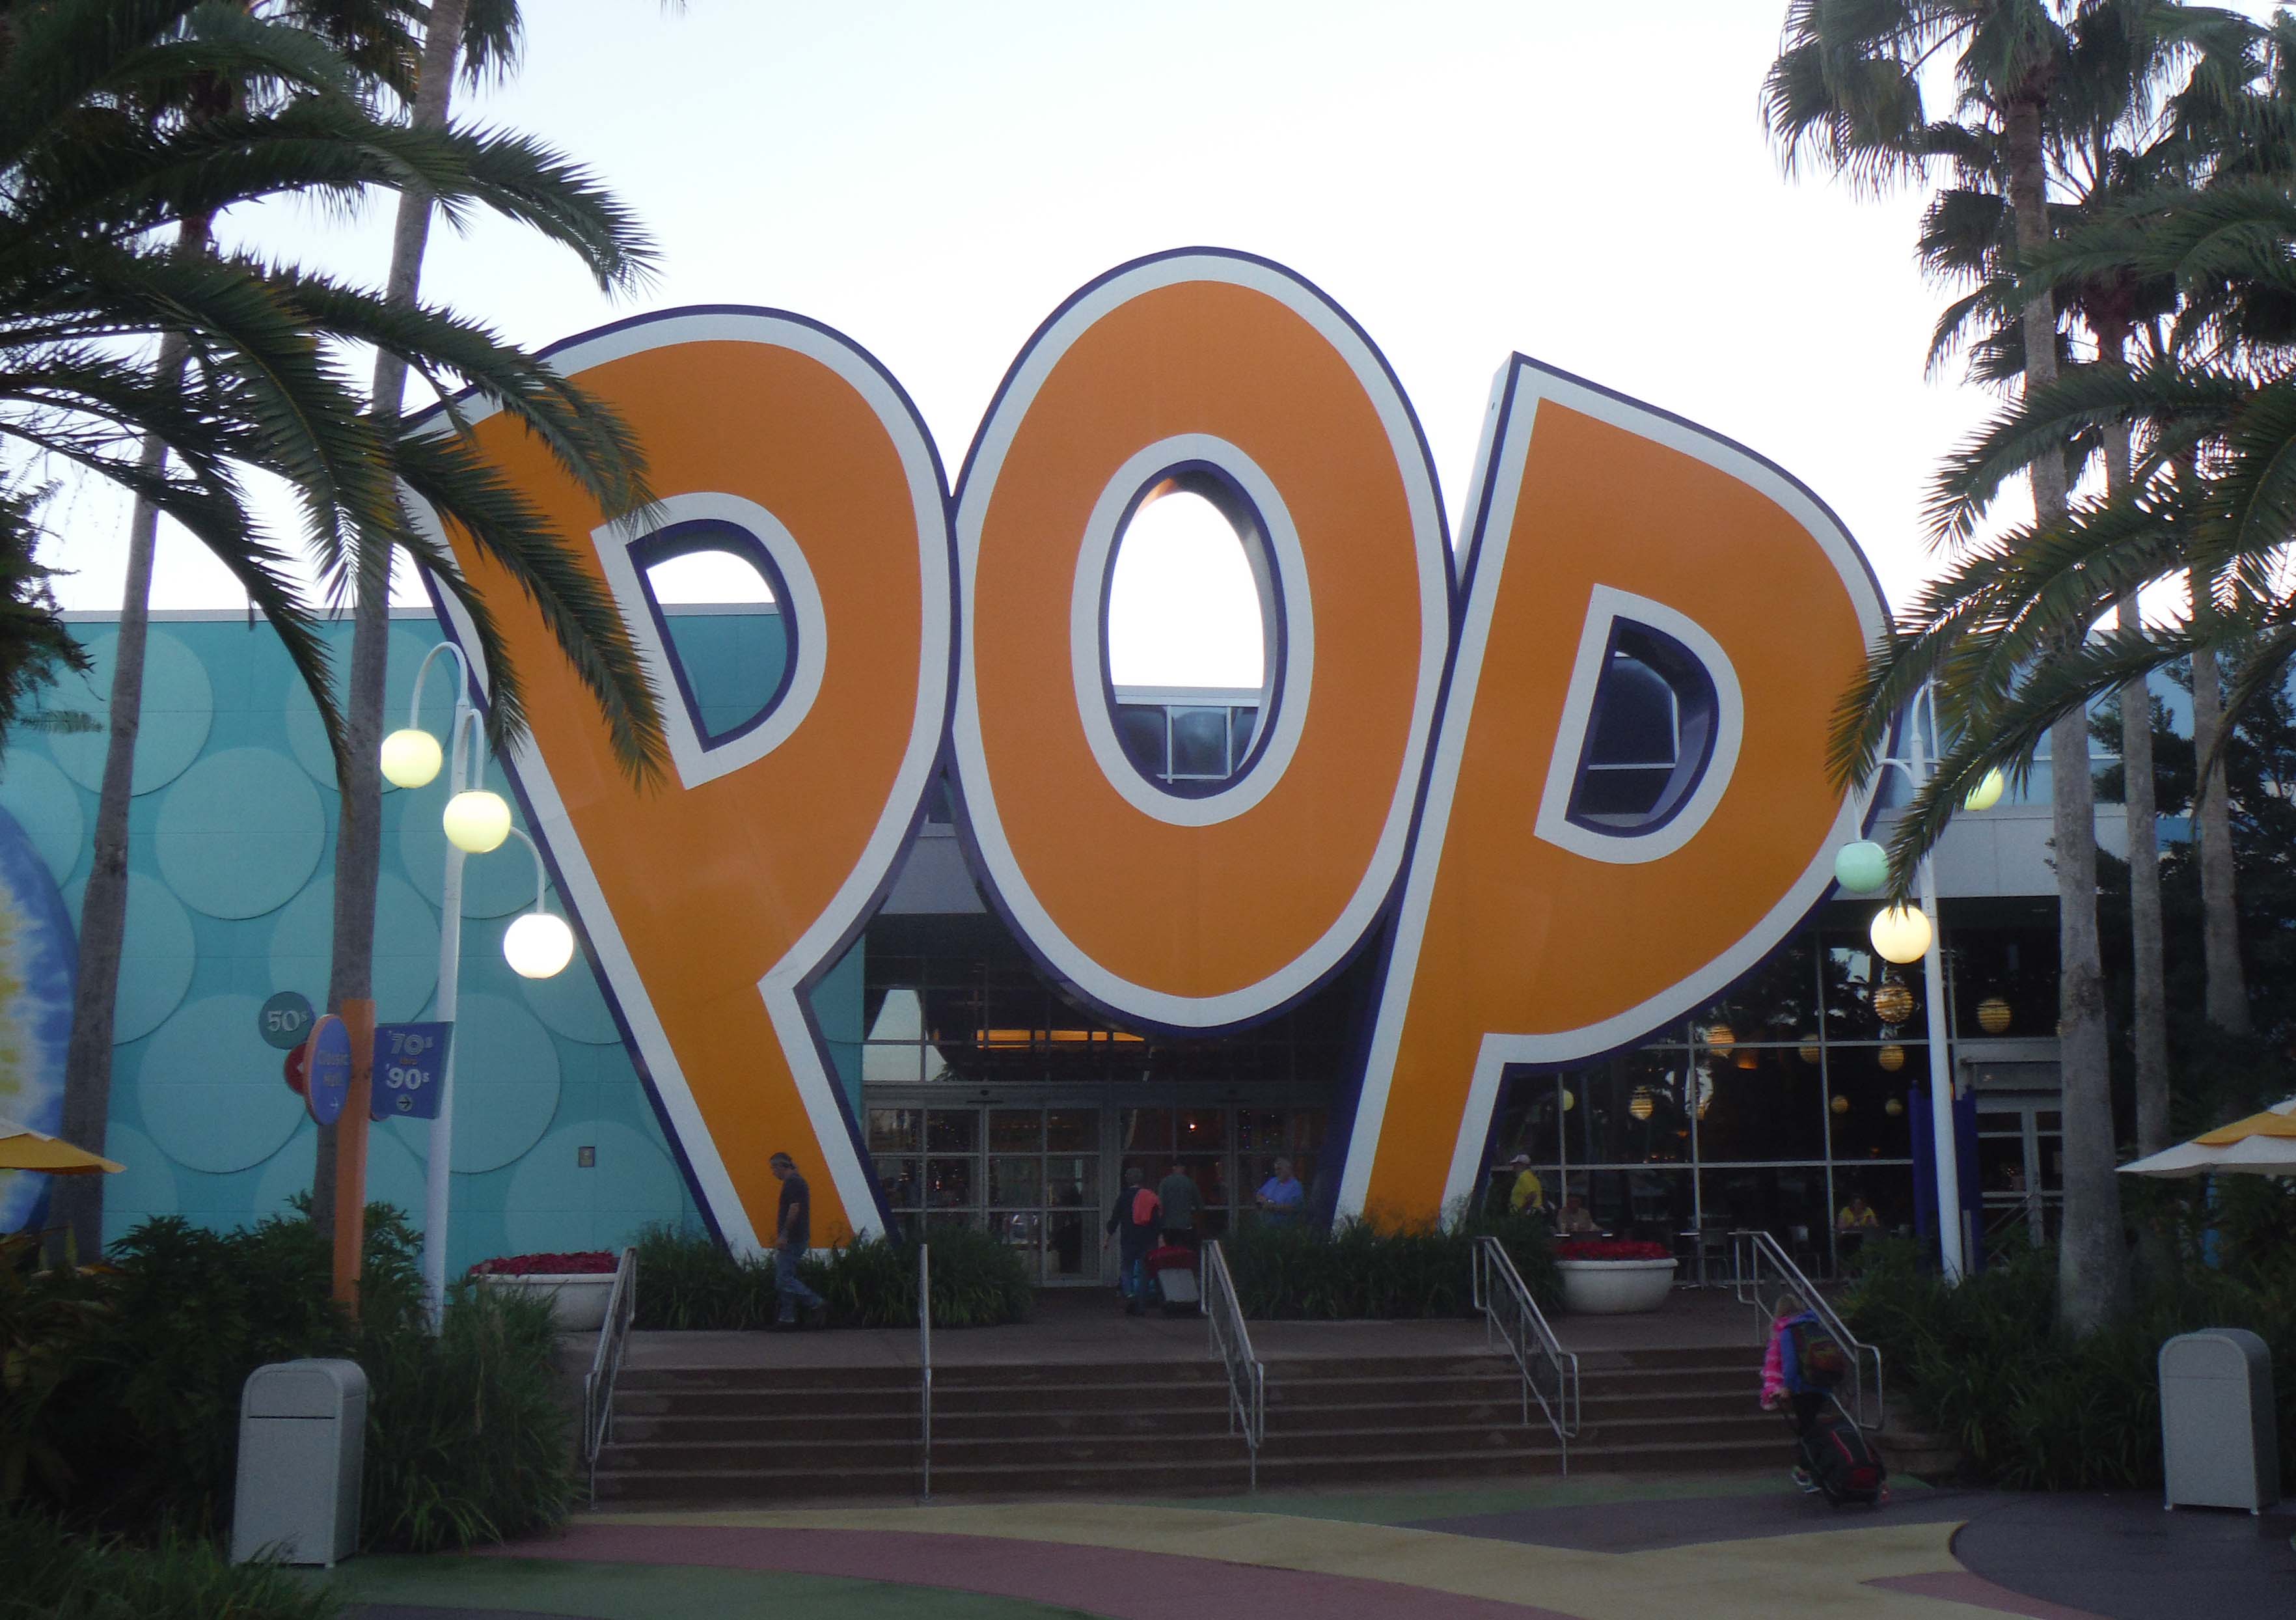 Disney’s Pop Century Resort Review